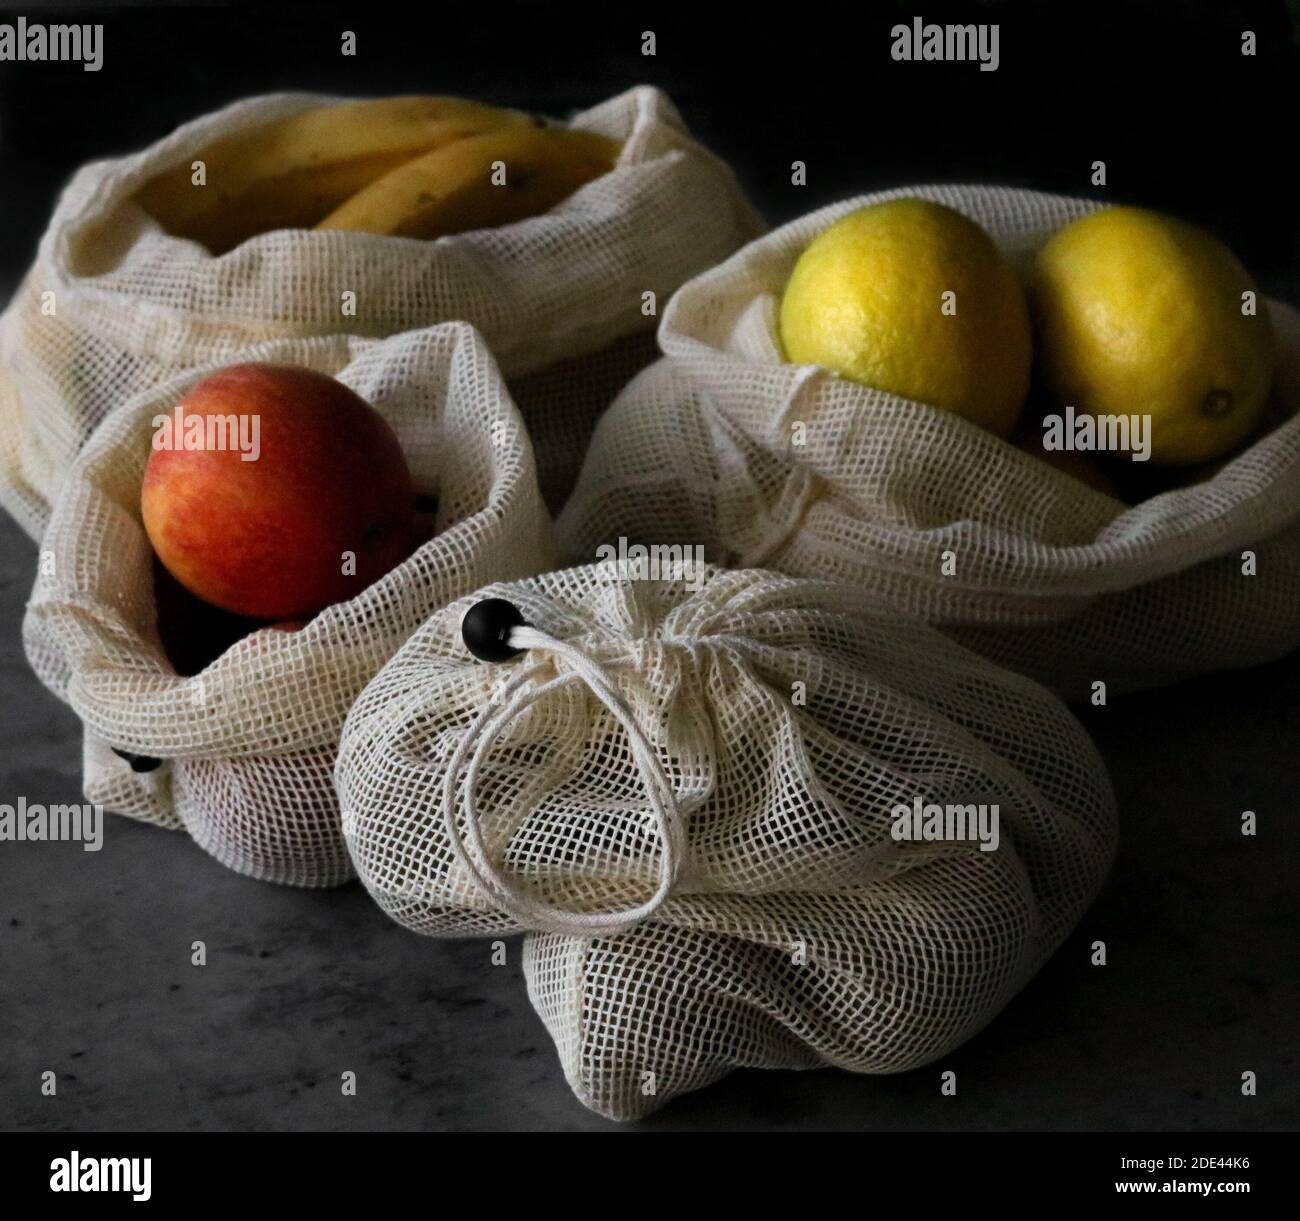 Quatre écobags en maille réutilisables avec différents fruits sur une table. Concept écologique. Orientation horizontale Banque D'Images